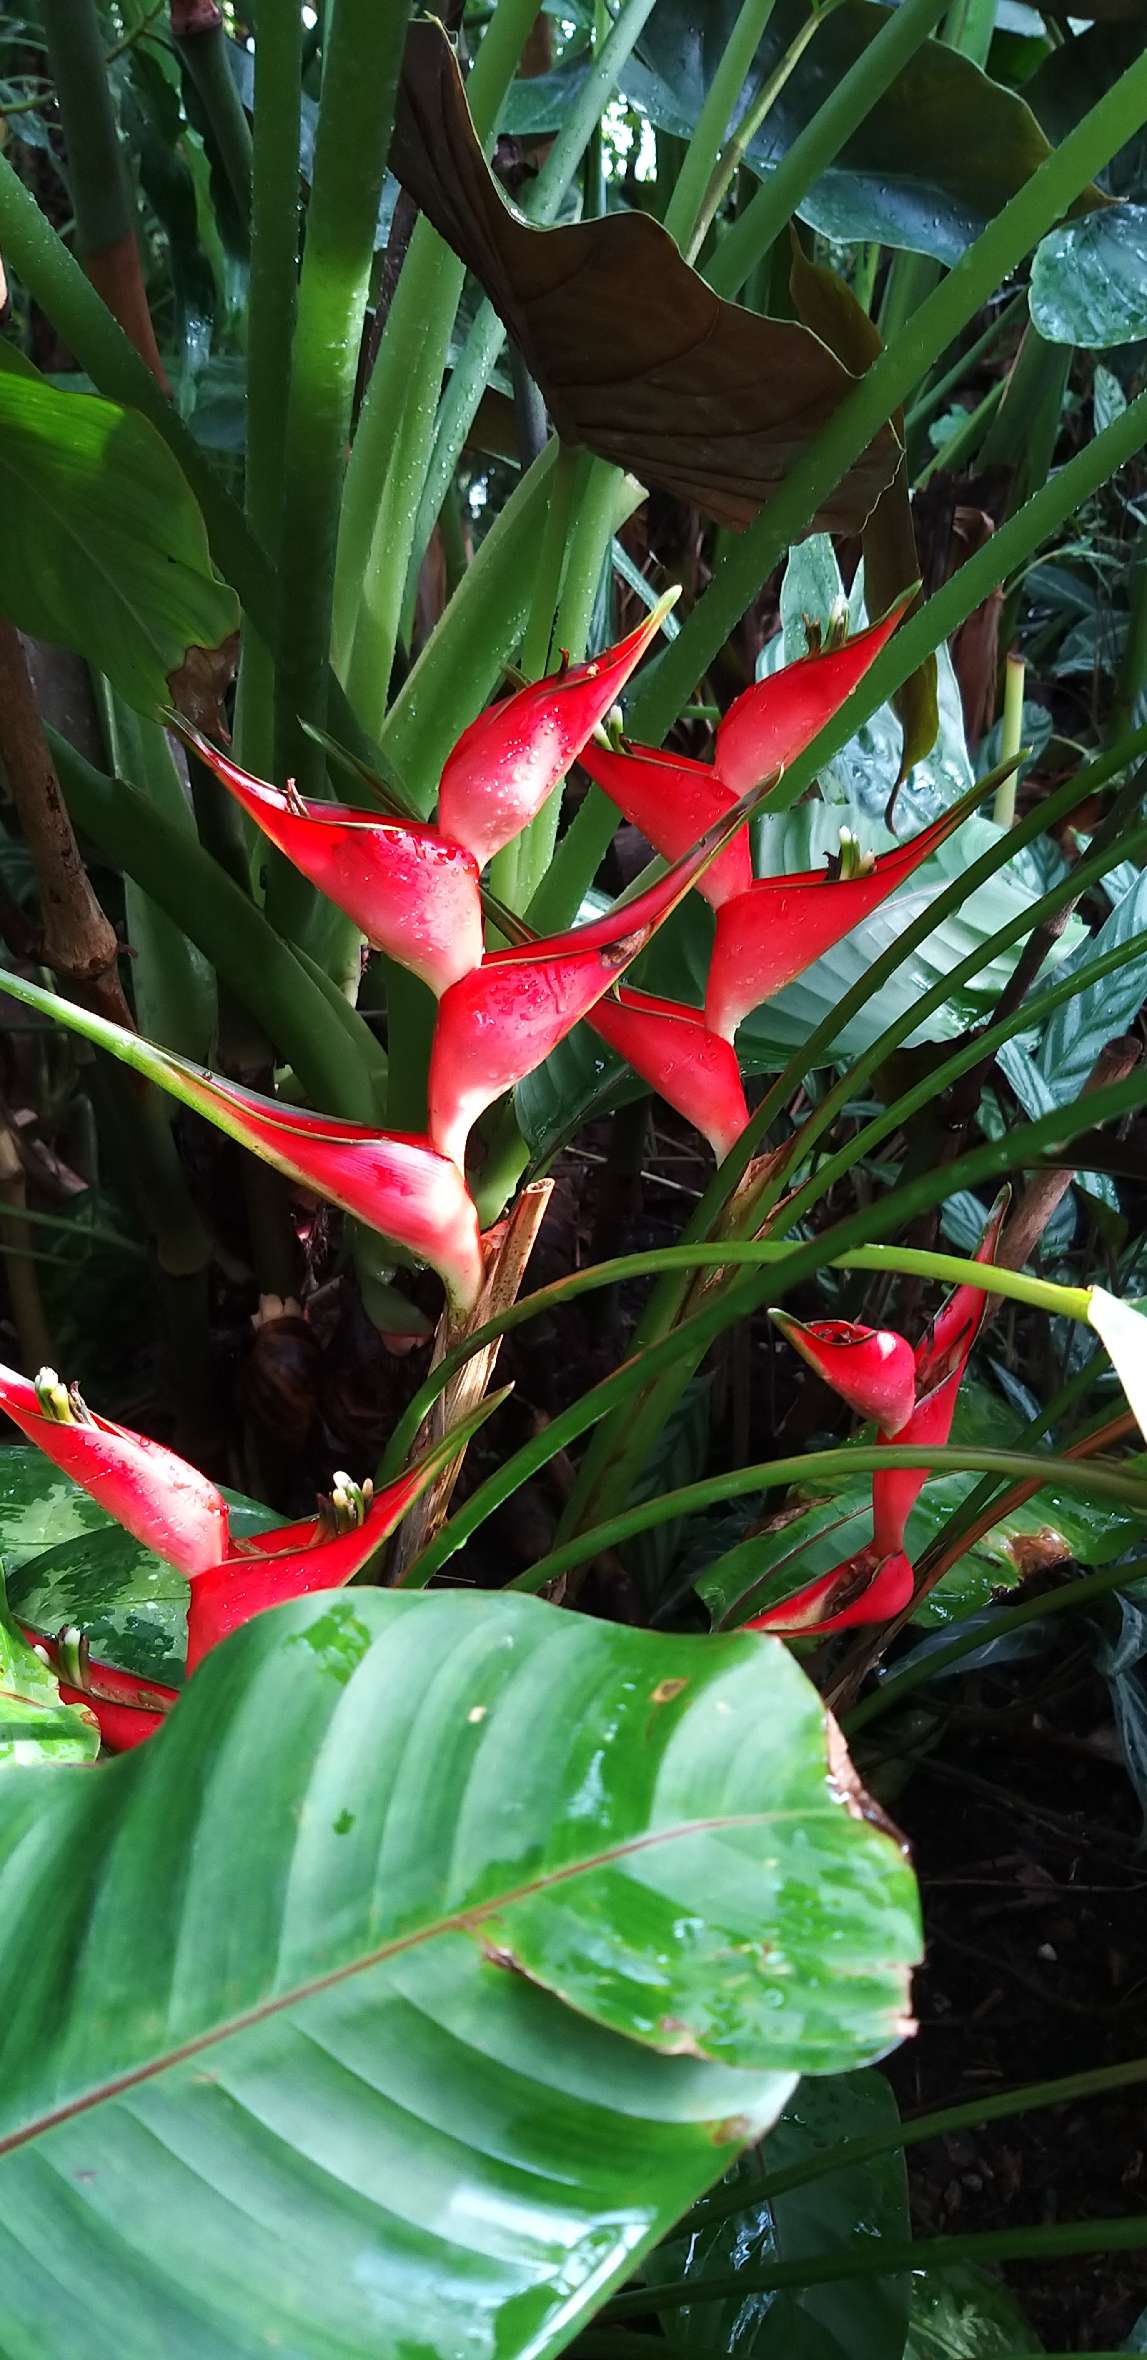 zu sehen ist eine Pflanze mit roten Blüten